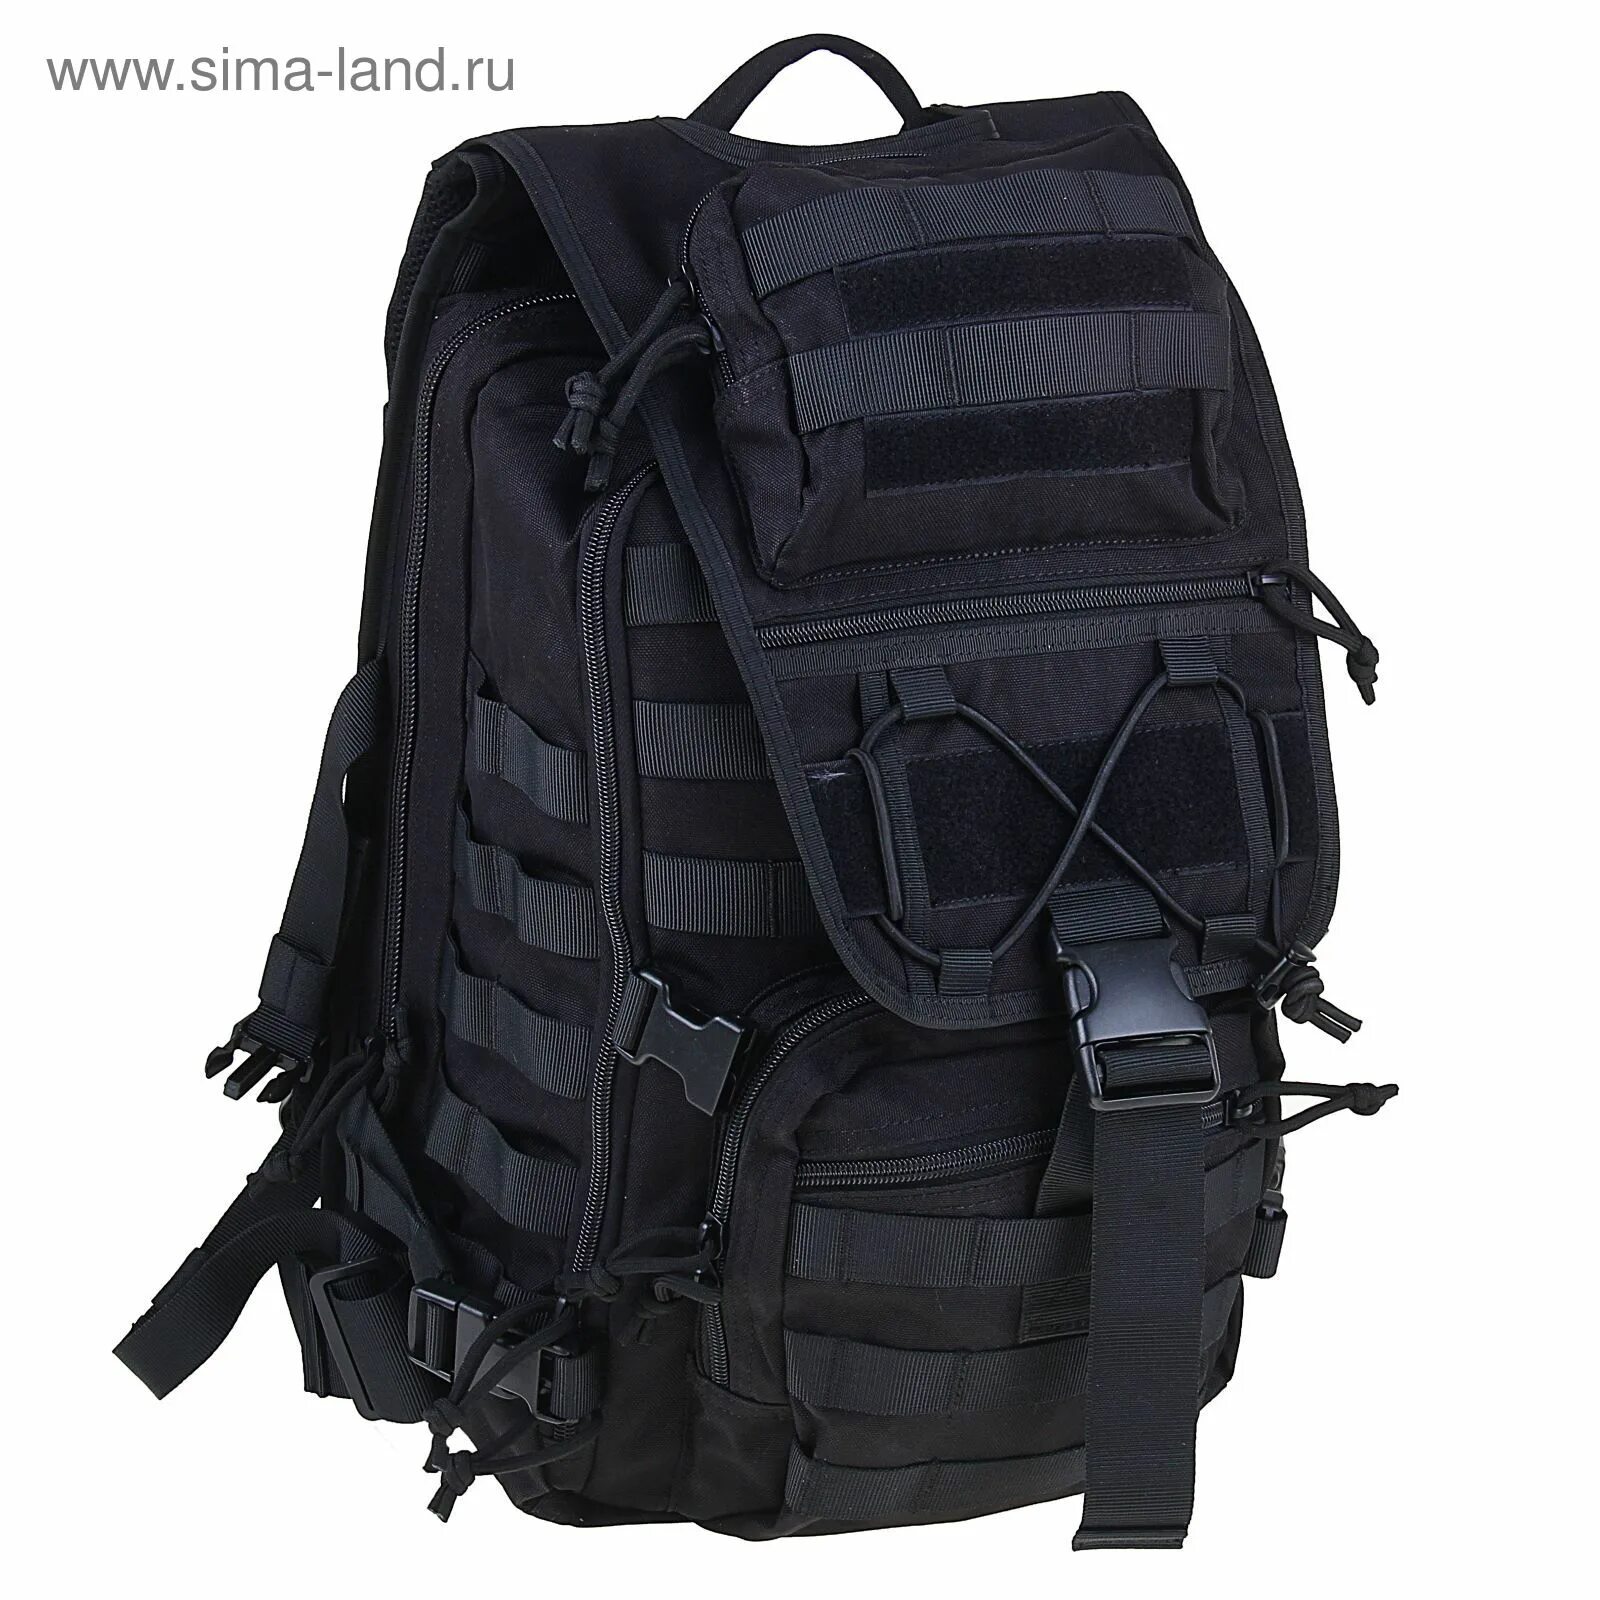 Купить рюкзак в воронеже. Tyr Alliance 30l Backpack 487. Рюкзак KINGRIN 3p Tactical Backpack. Рюкзак WOSPORT Multifunction Backpack od (BP-03-od). Рюкзак черный походный 40л.